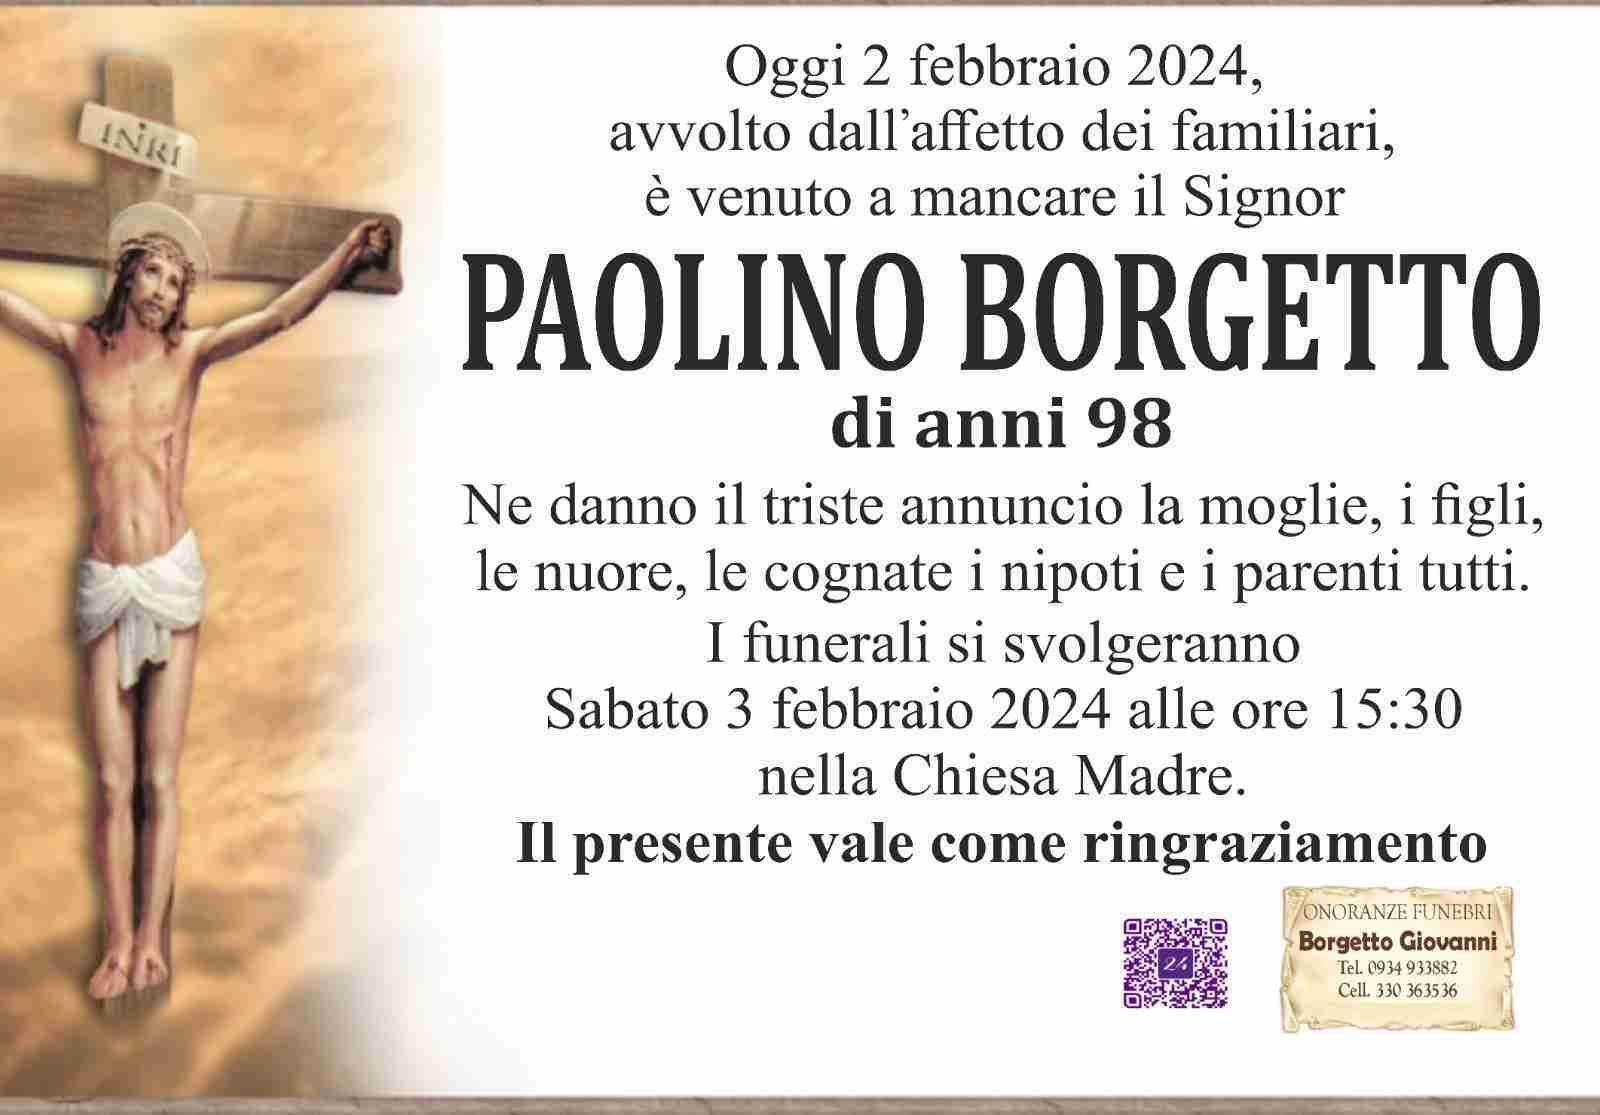 Paolino Borgetto